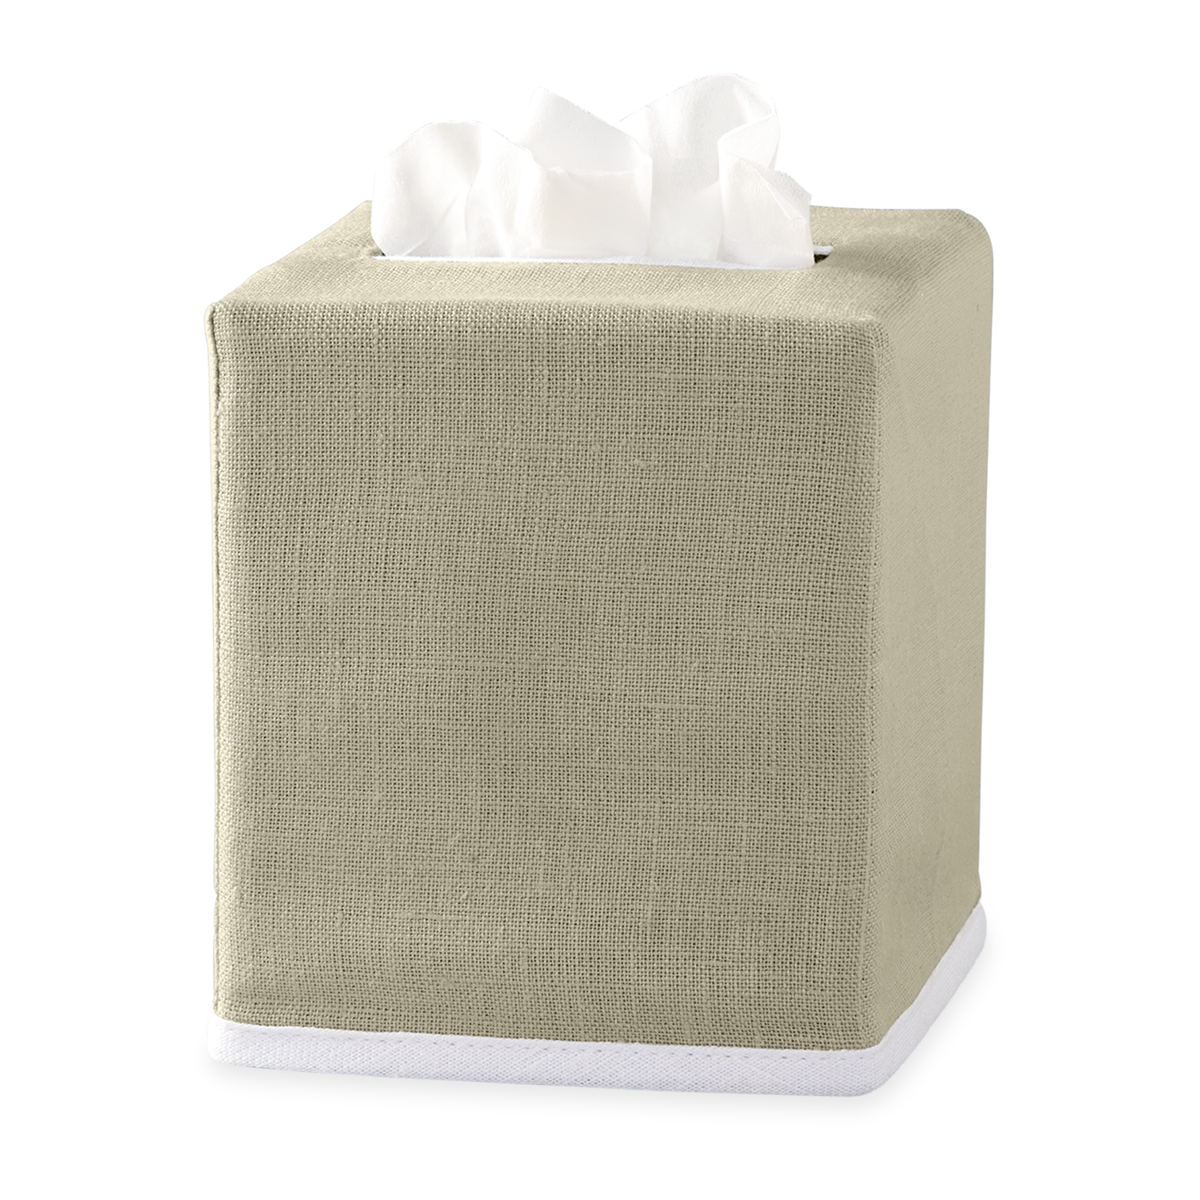 Oatmeal Matouk Chelsea Linen Tissue Box Cover Against White Background